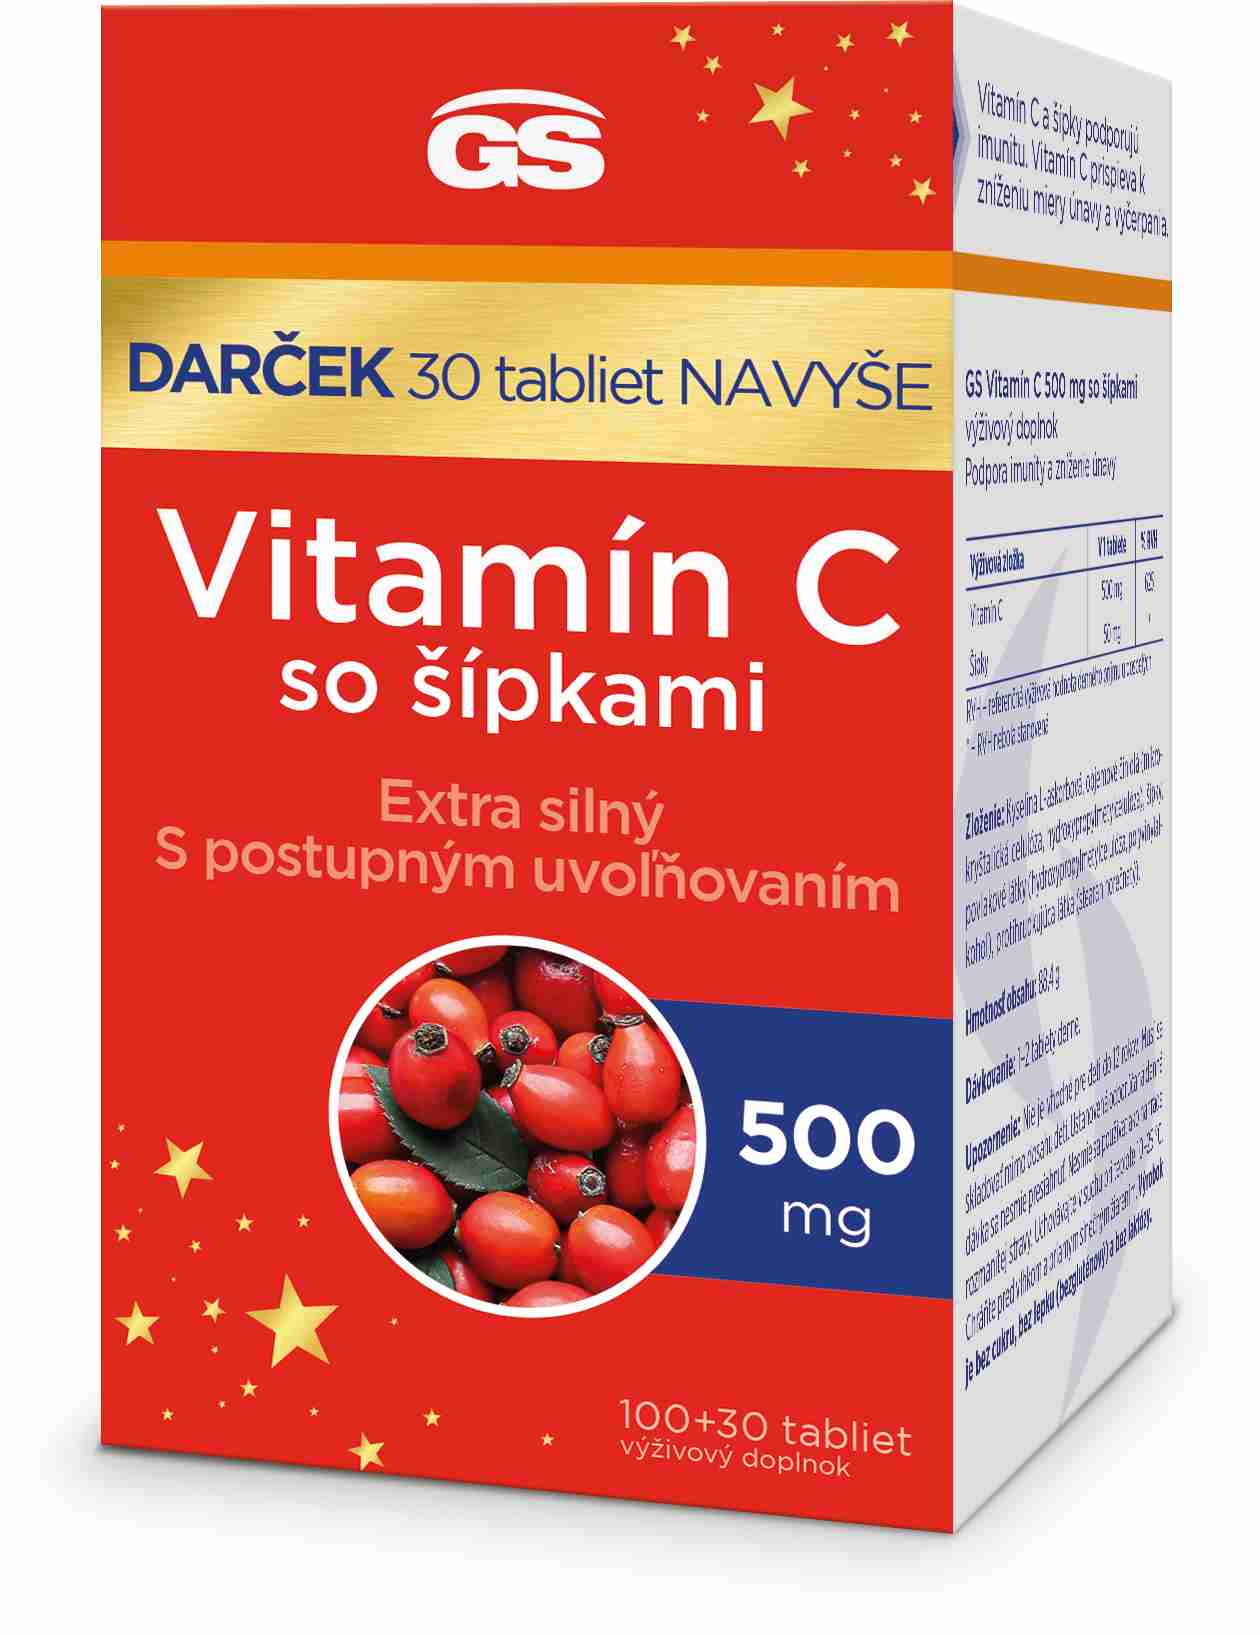 GS Vitamin C500 so šípkami. 10030 darček